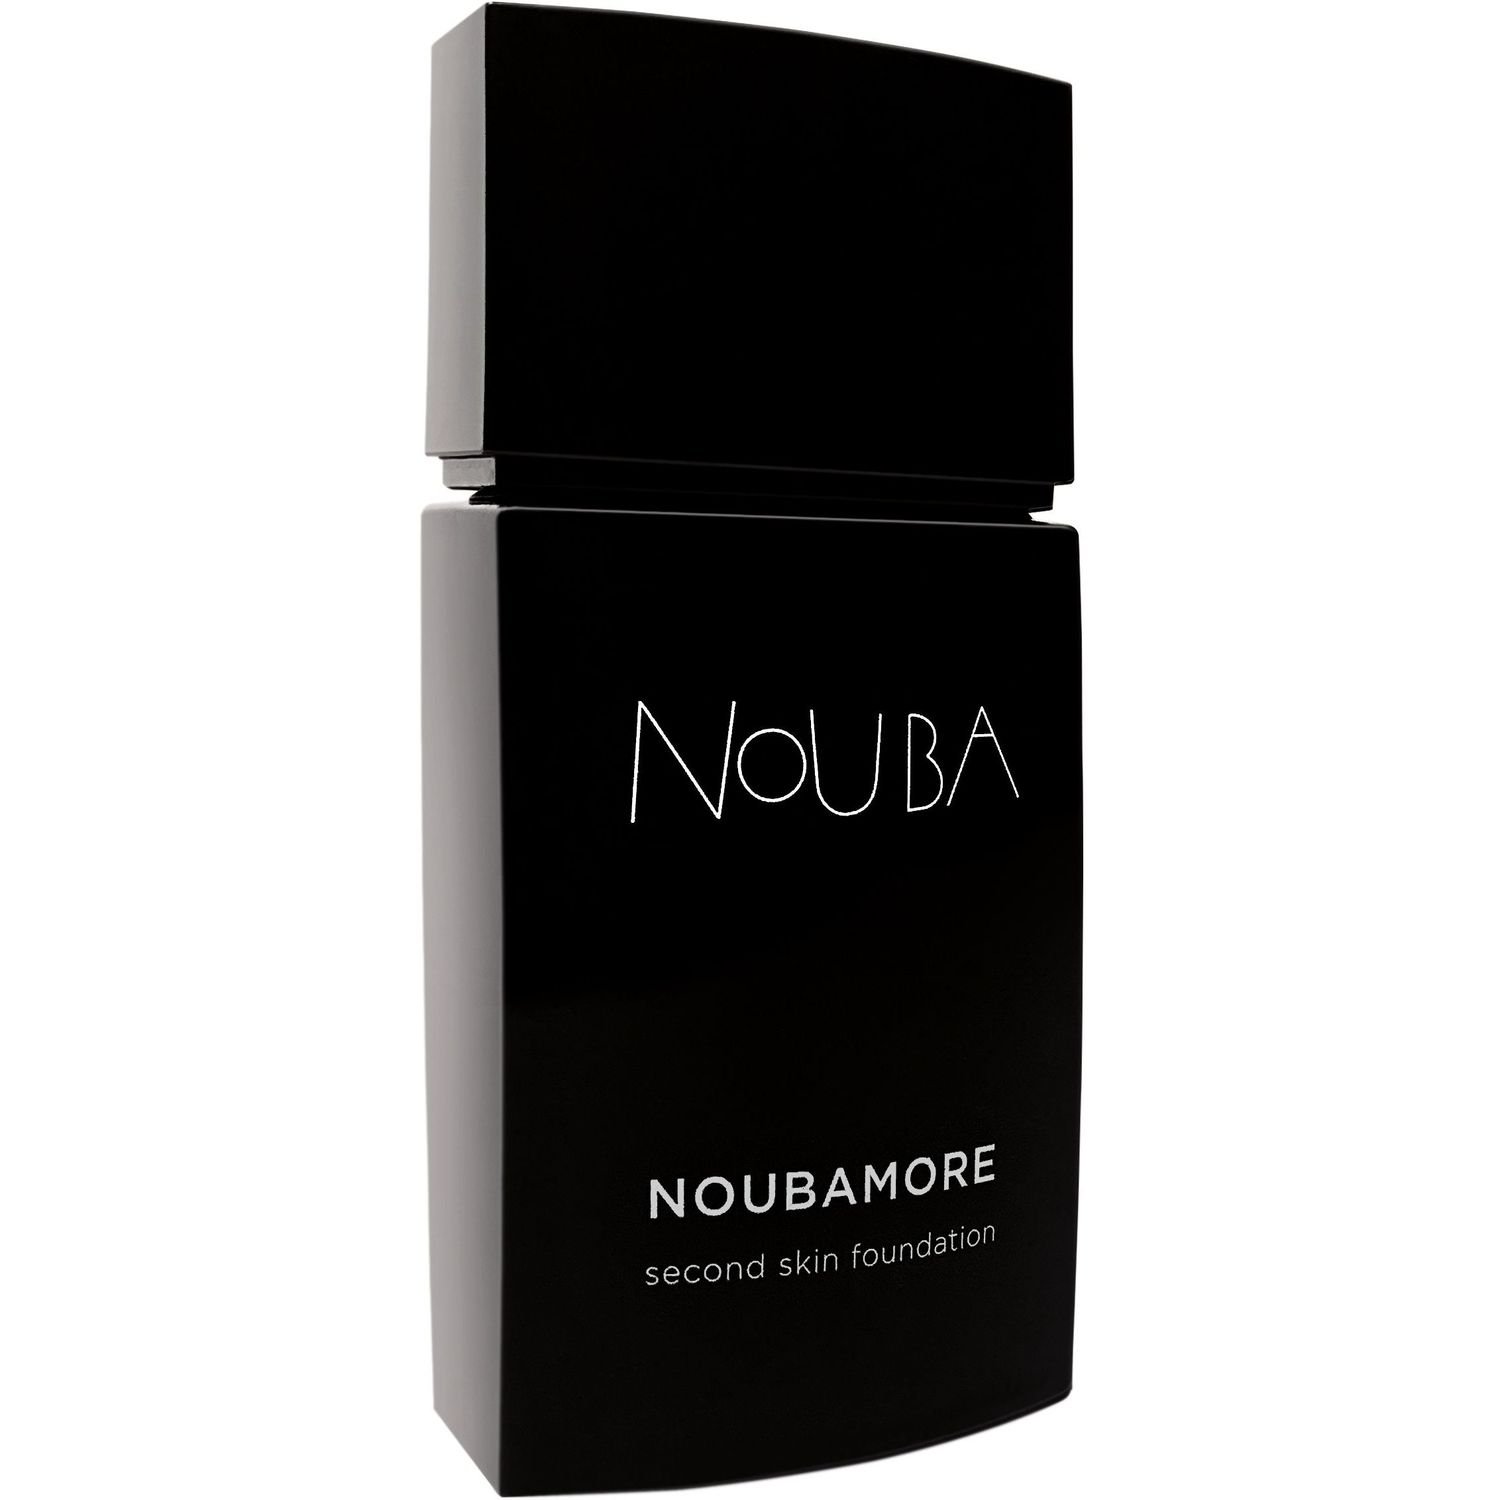 Тональная основа Nouba Noubamore Second Skin тон 83, 30 мл - фото 1